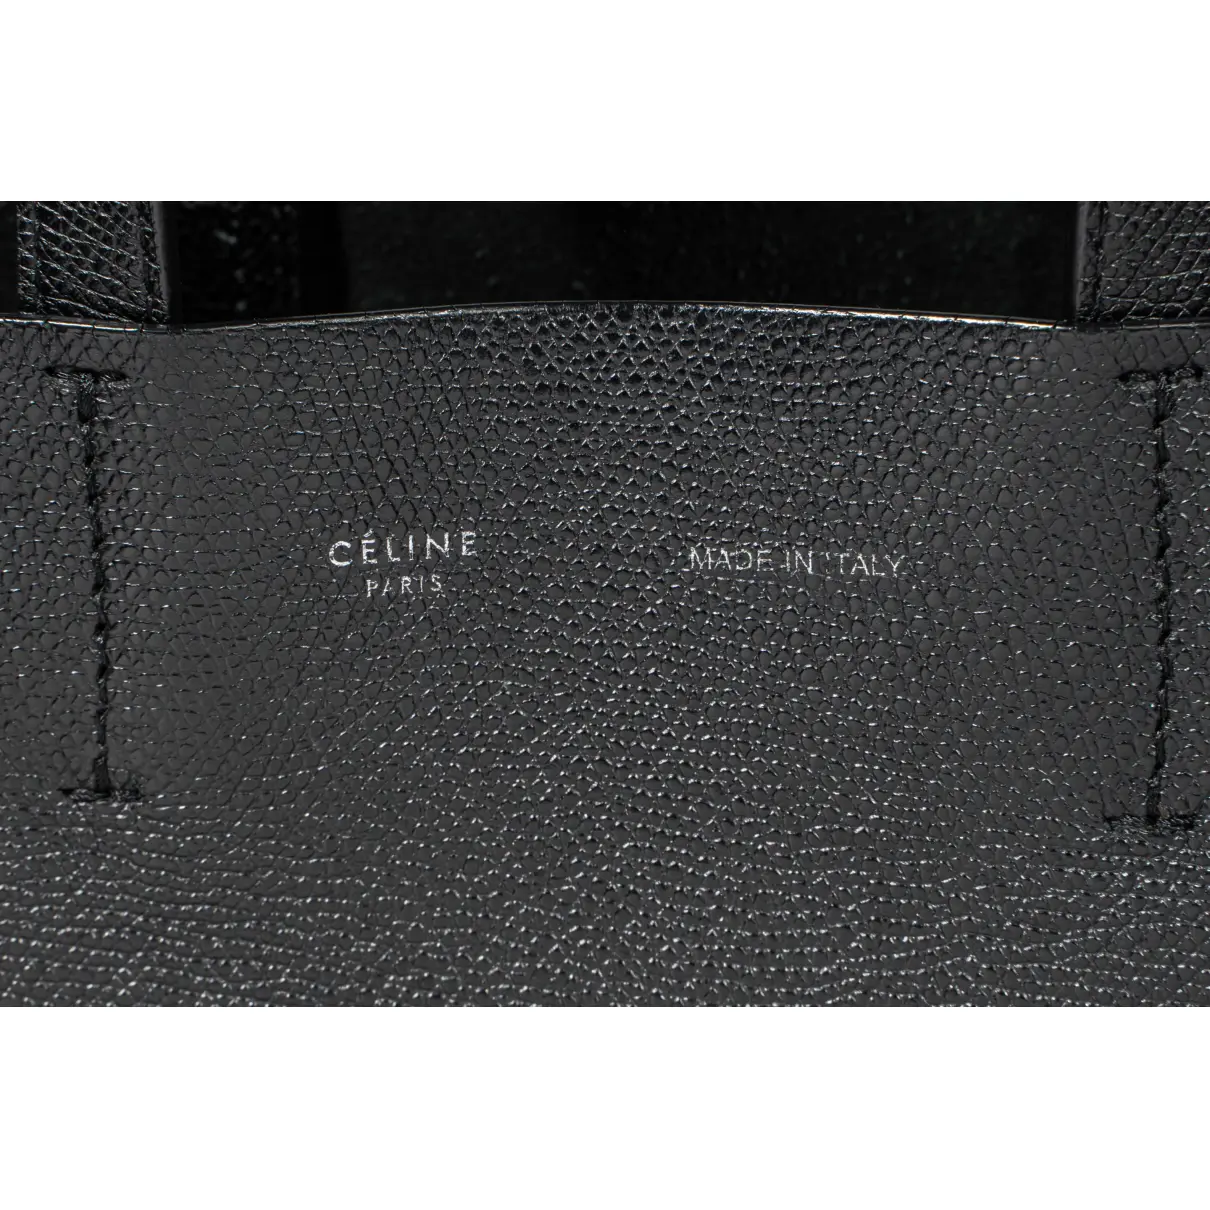 Cabas PM leather bag Celine